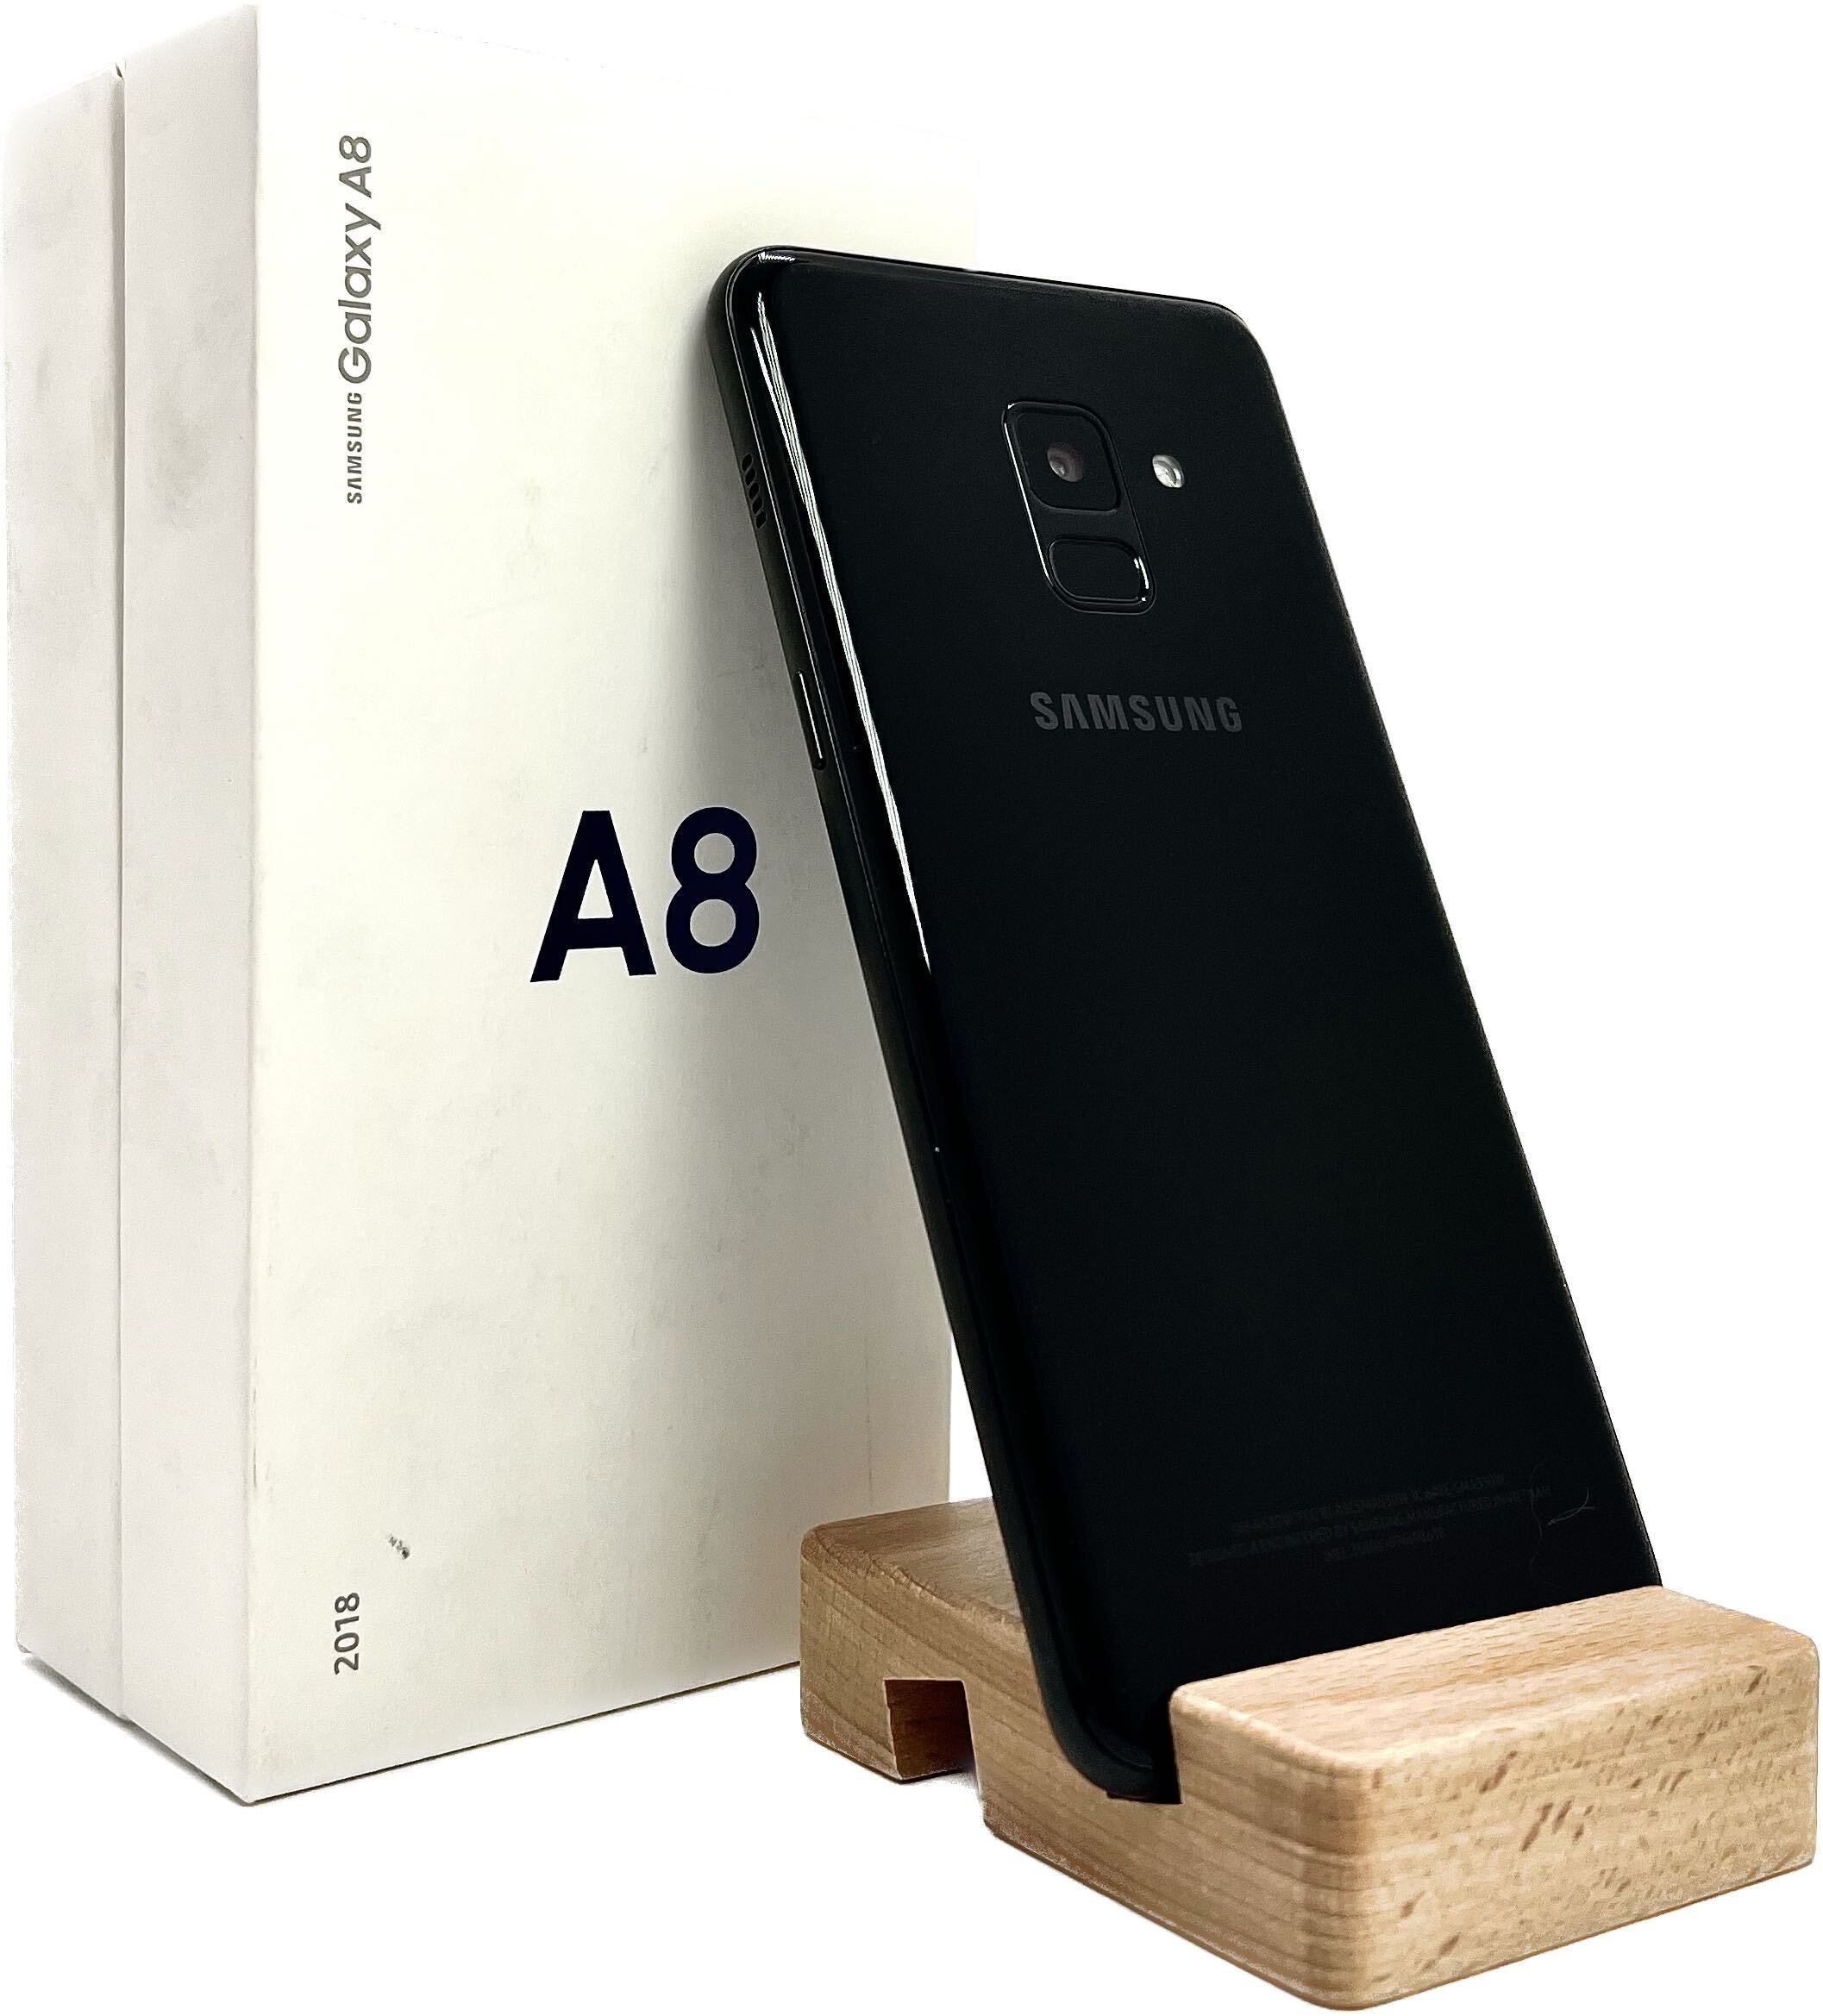 Samsung Galaxy A8 (2018) - (ATT Carrier Only)